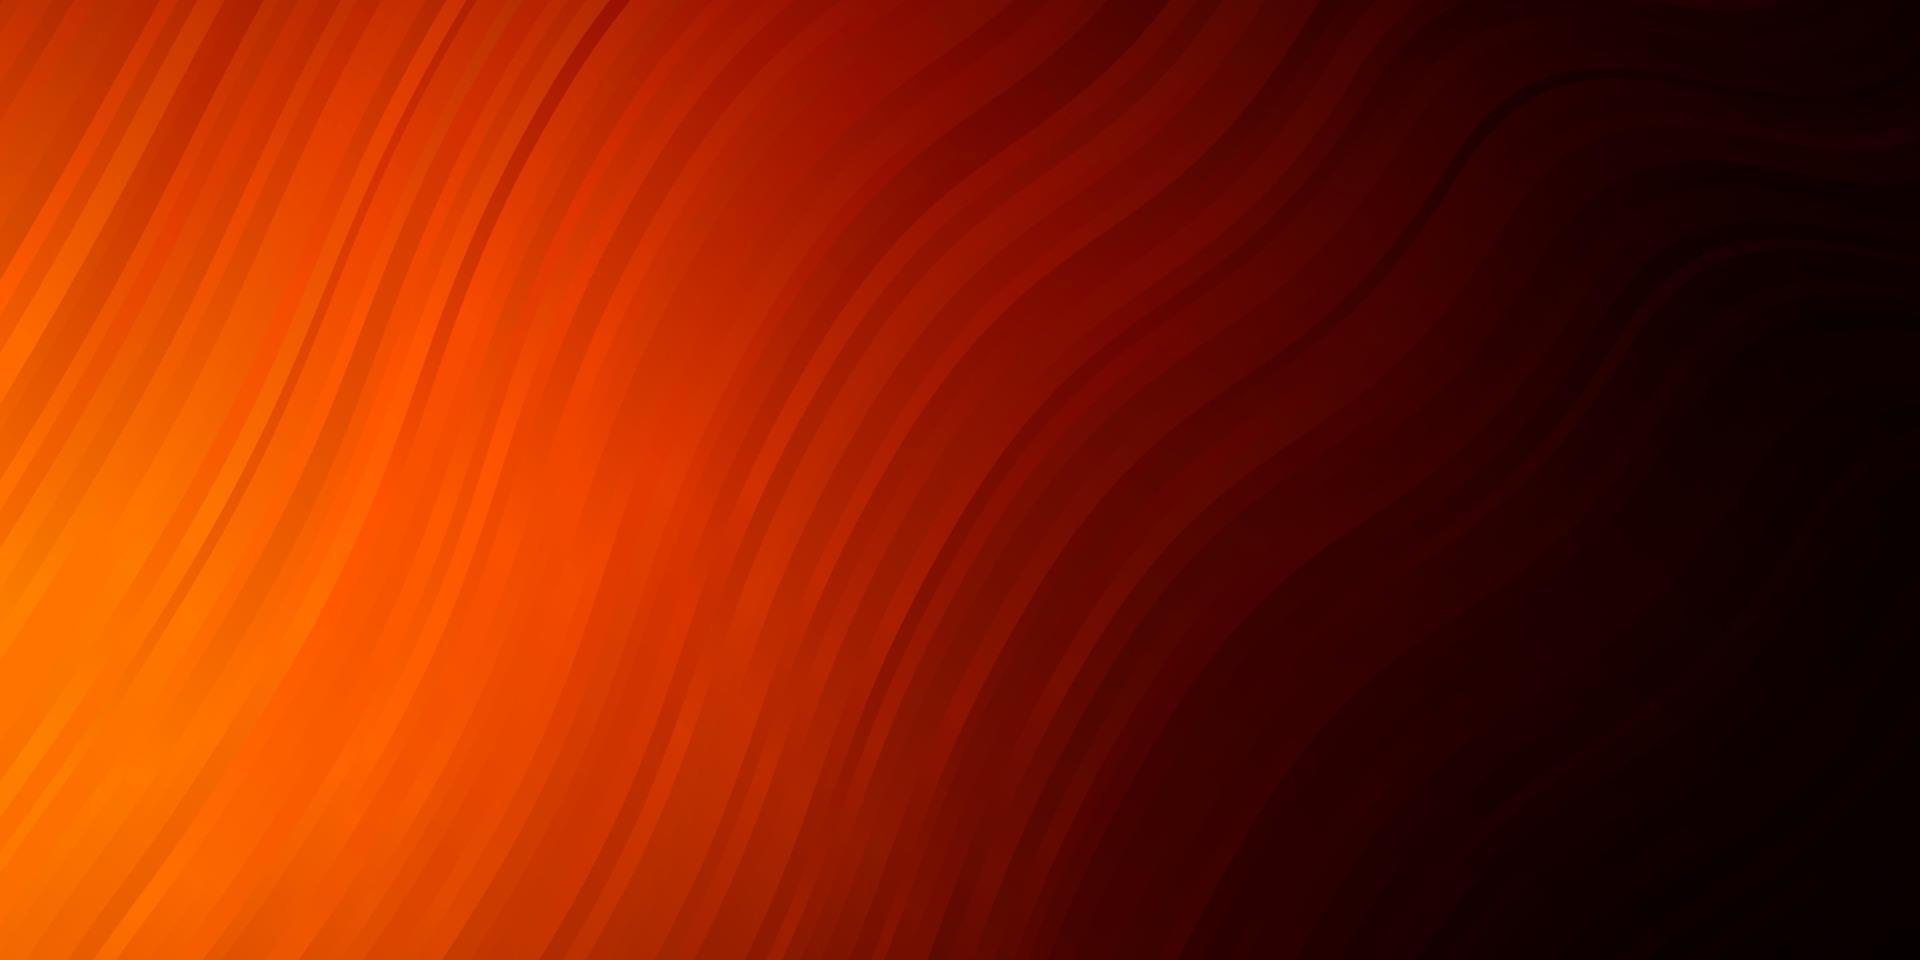 trama vettoriale arancione scuro con curve.